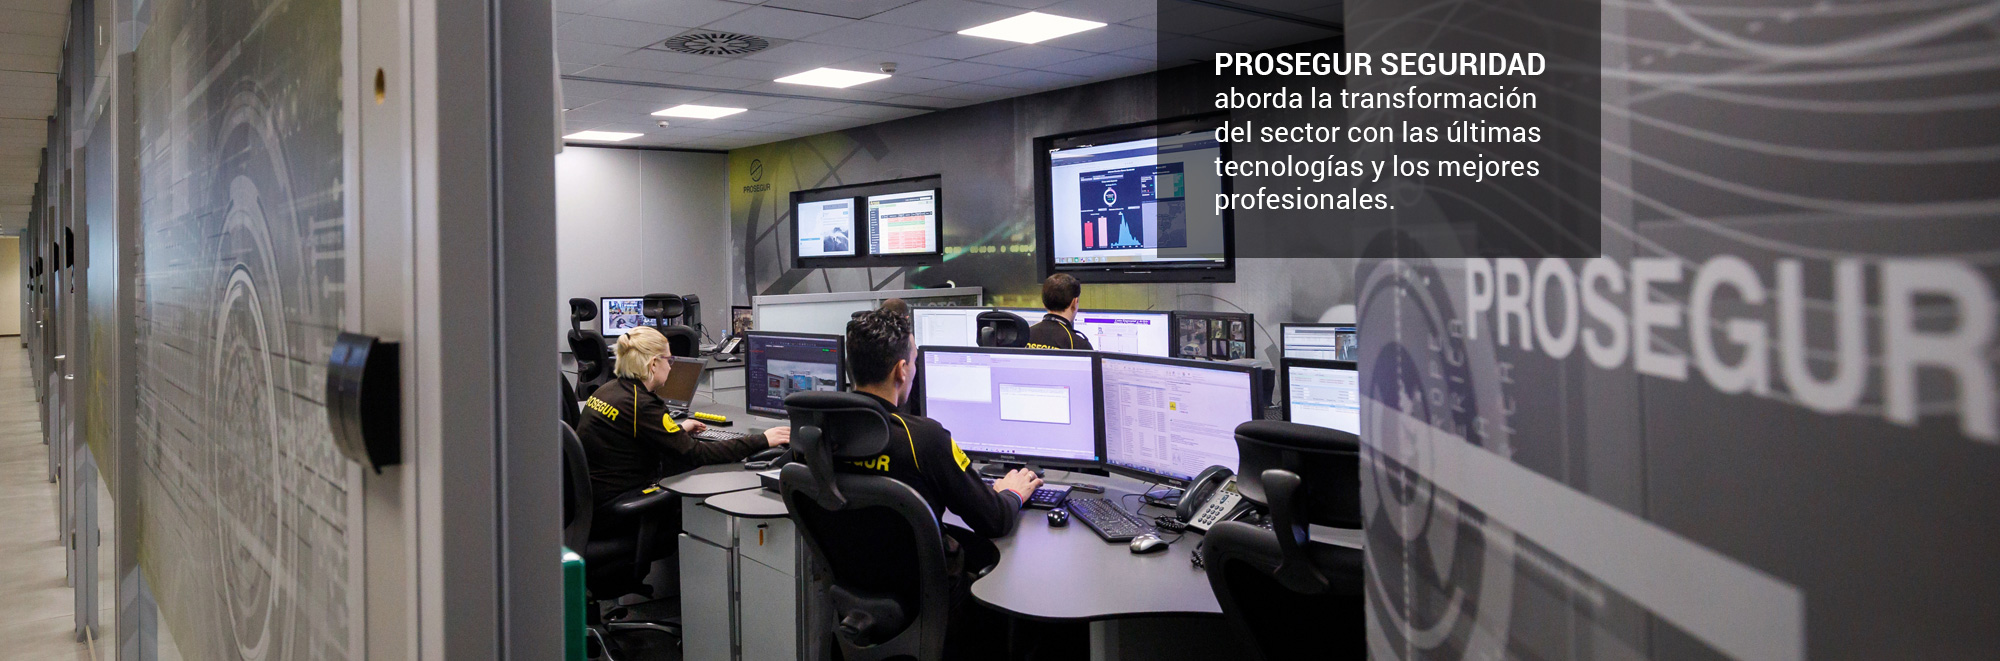 Prosegur seguridad aborda la transformación del sector con las últimas tecnologías y los mejores profesionales